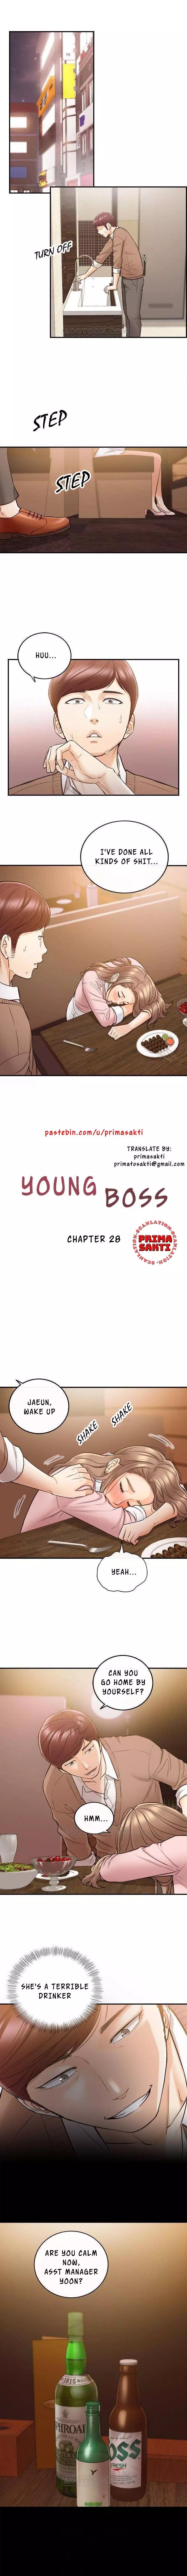 Young Boss Manhwa 01-73 224ページ